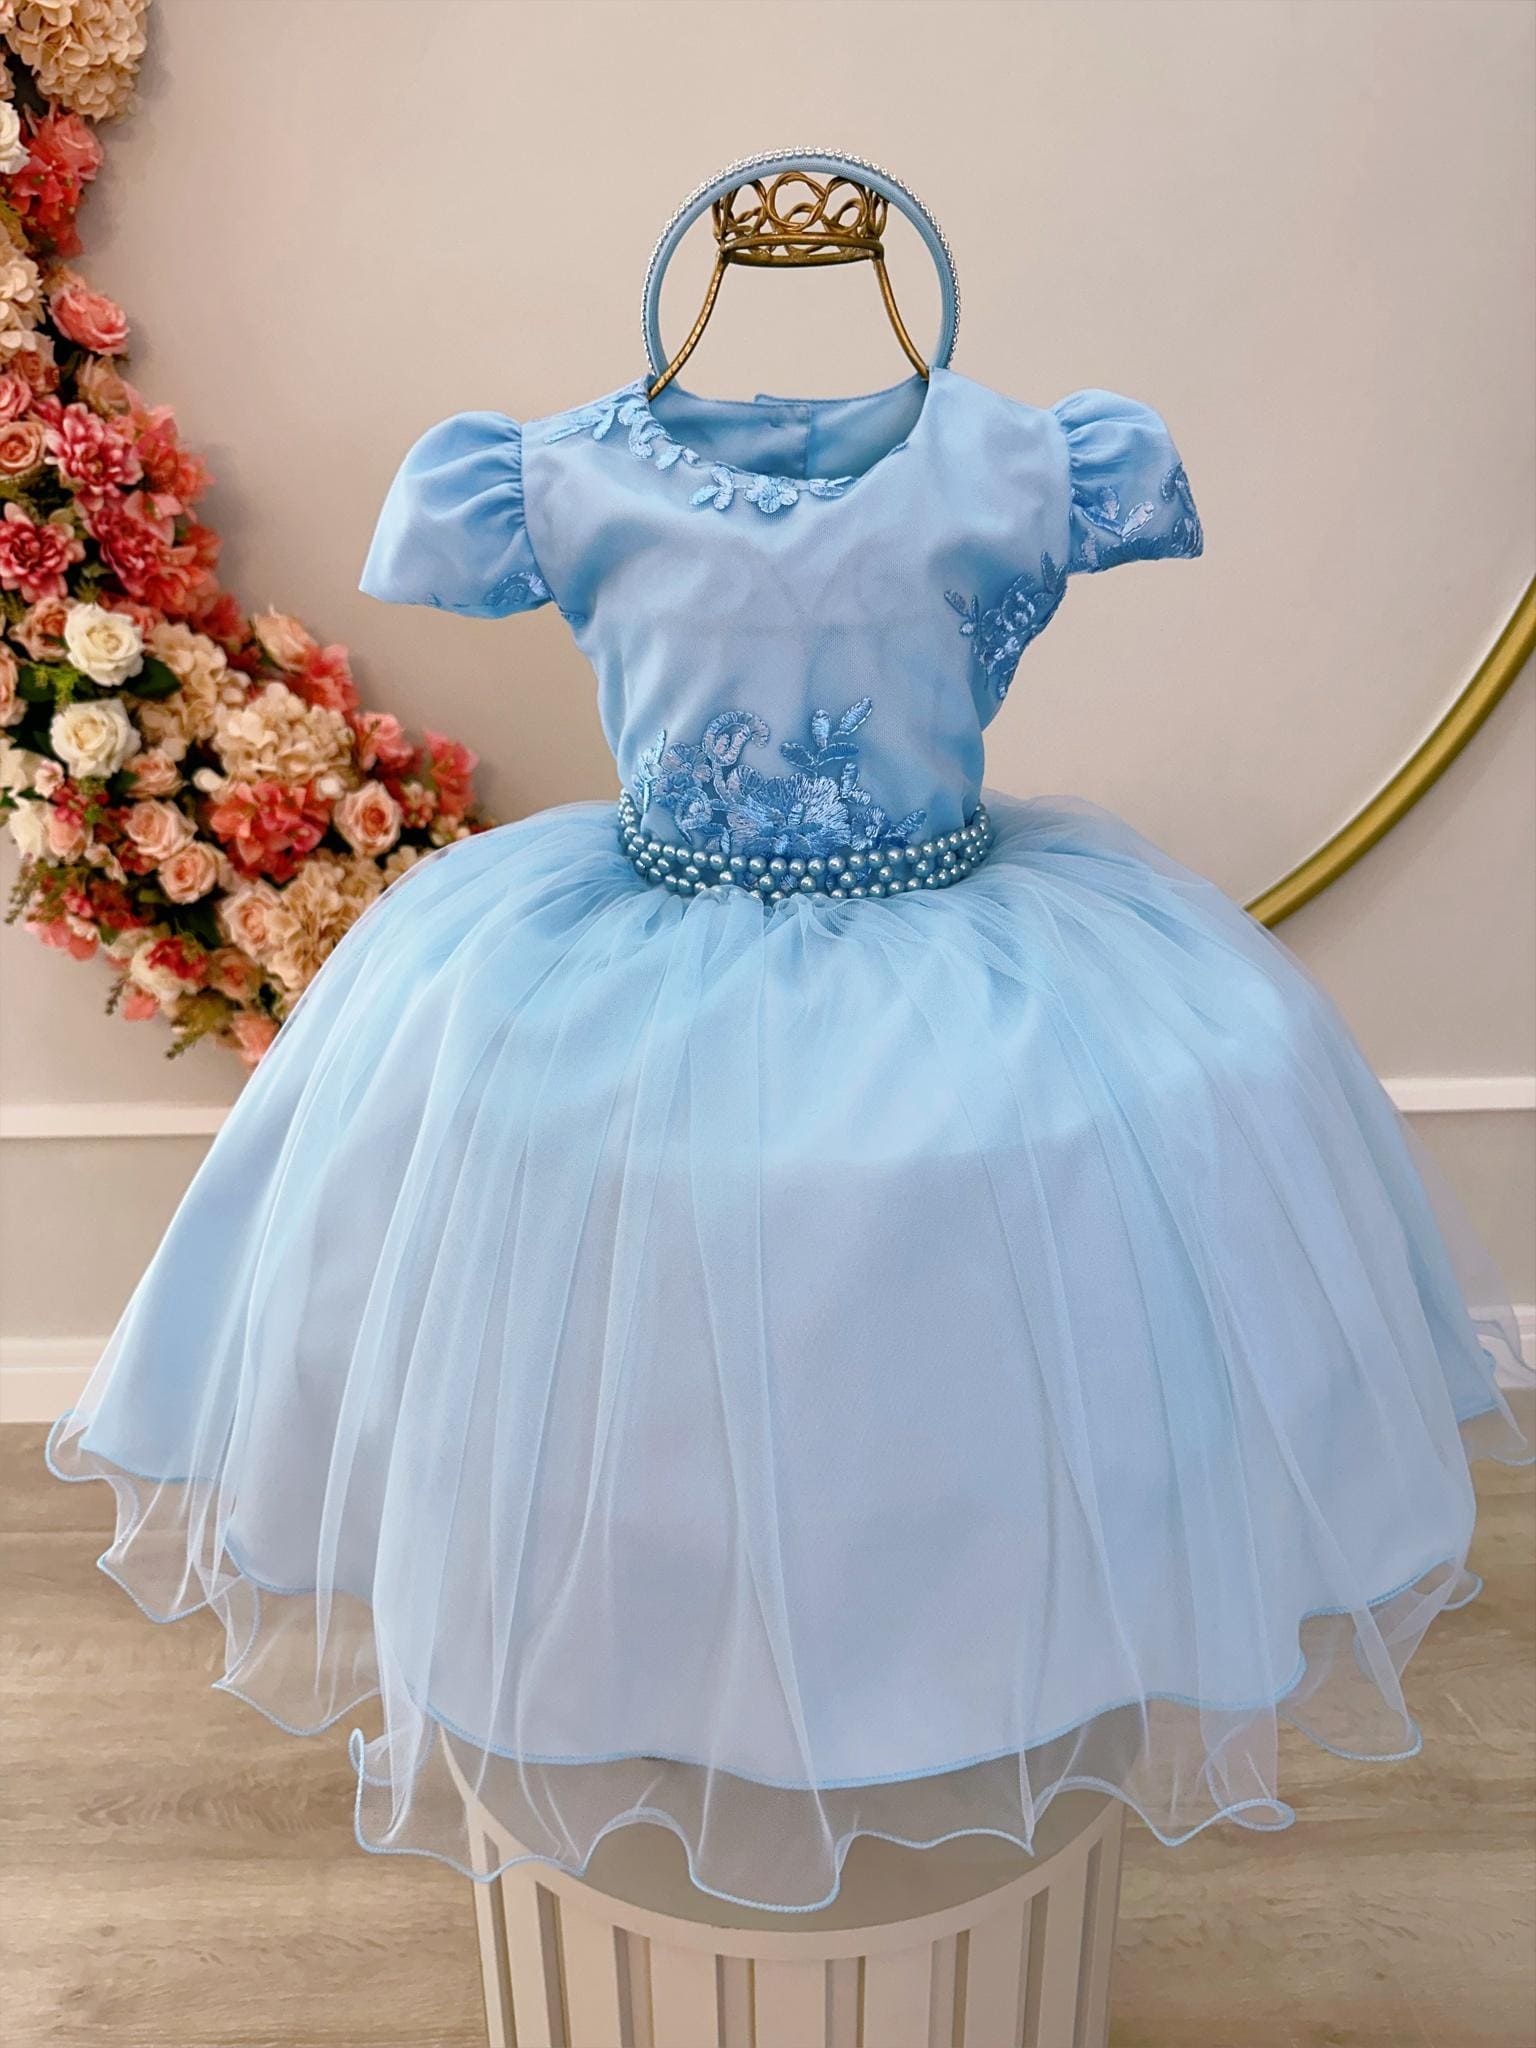 Vestido de Festa Infantil Moderno Daminha Azul Claro